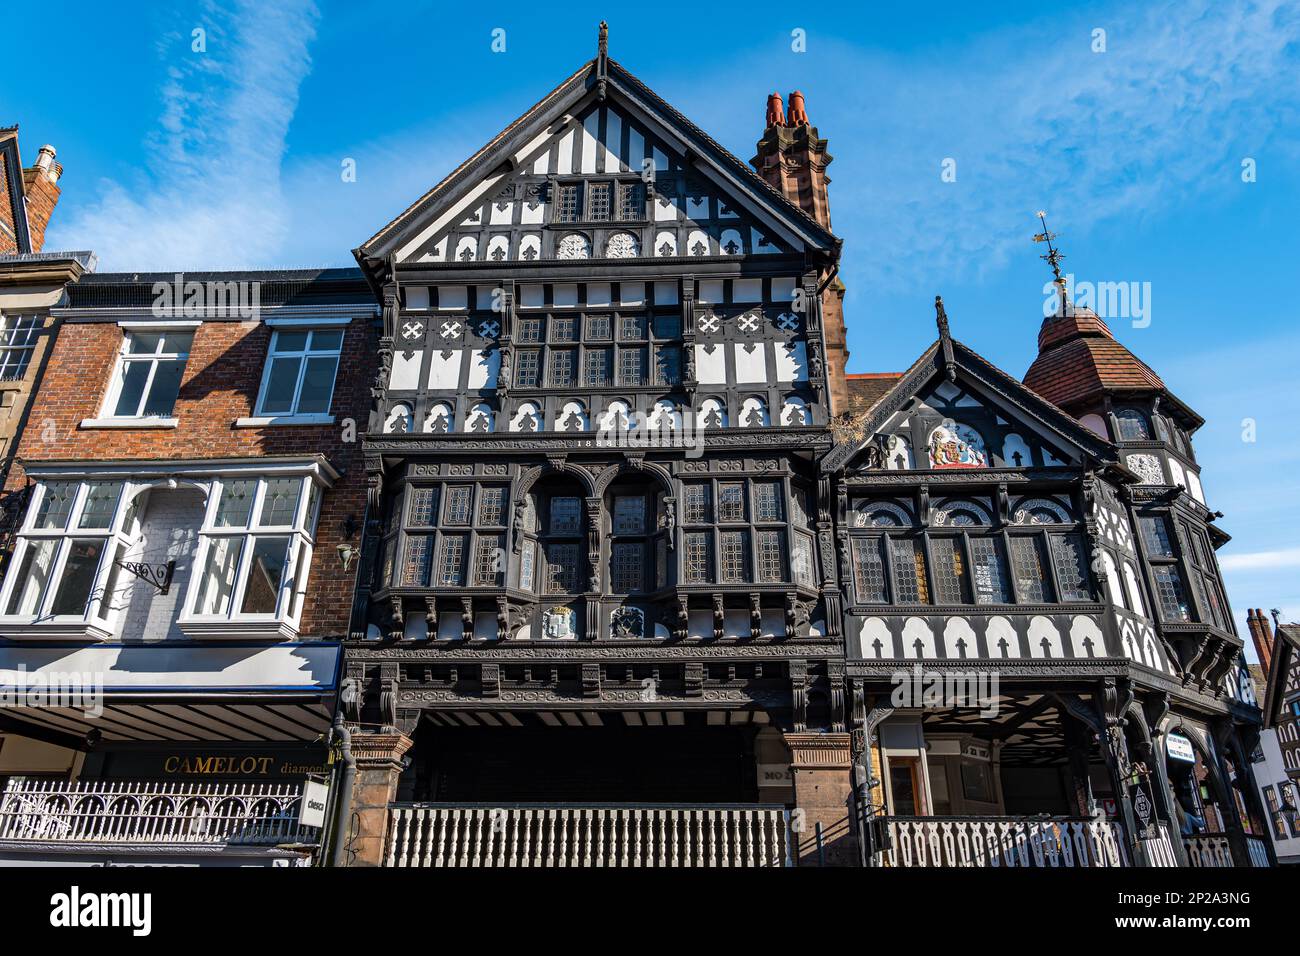 Storici edifici a graticcio vecchi e decorati, Eastgate Street, Chester, Inghilterra, Regno Unito Foto Stock